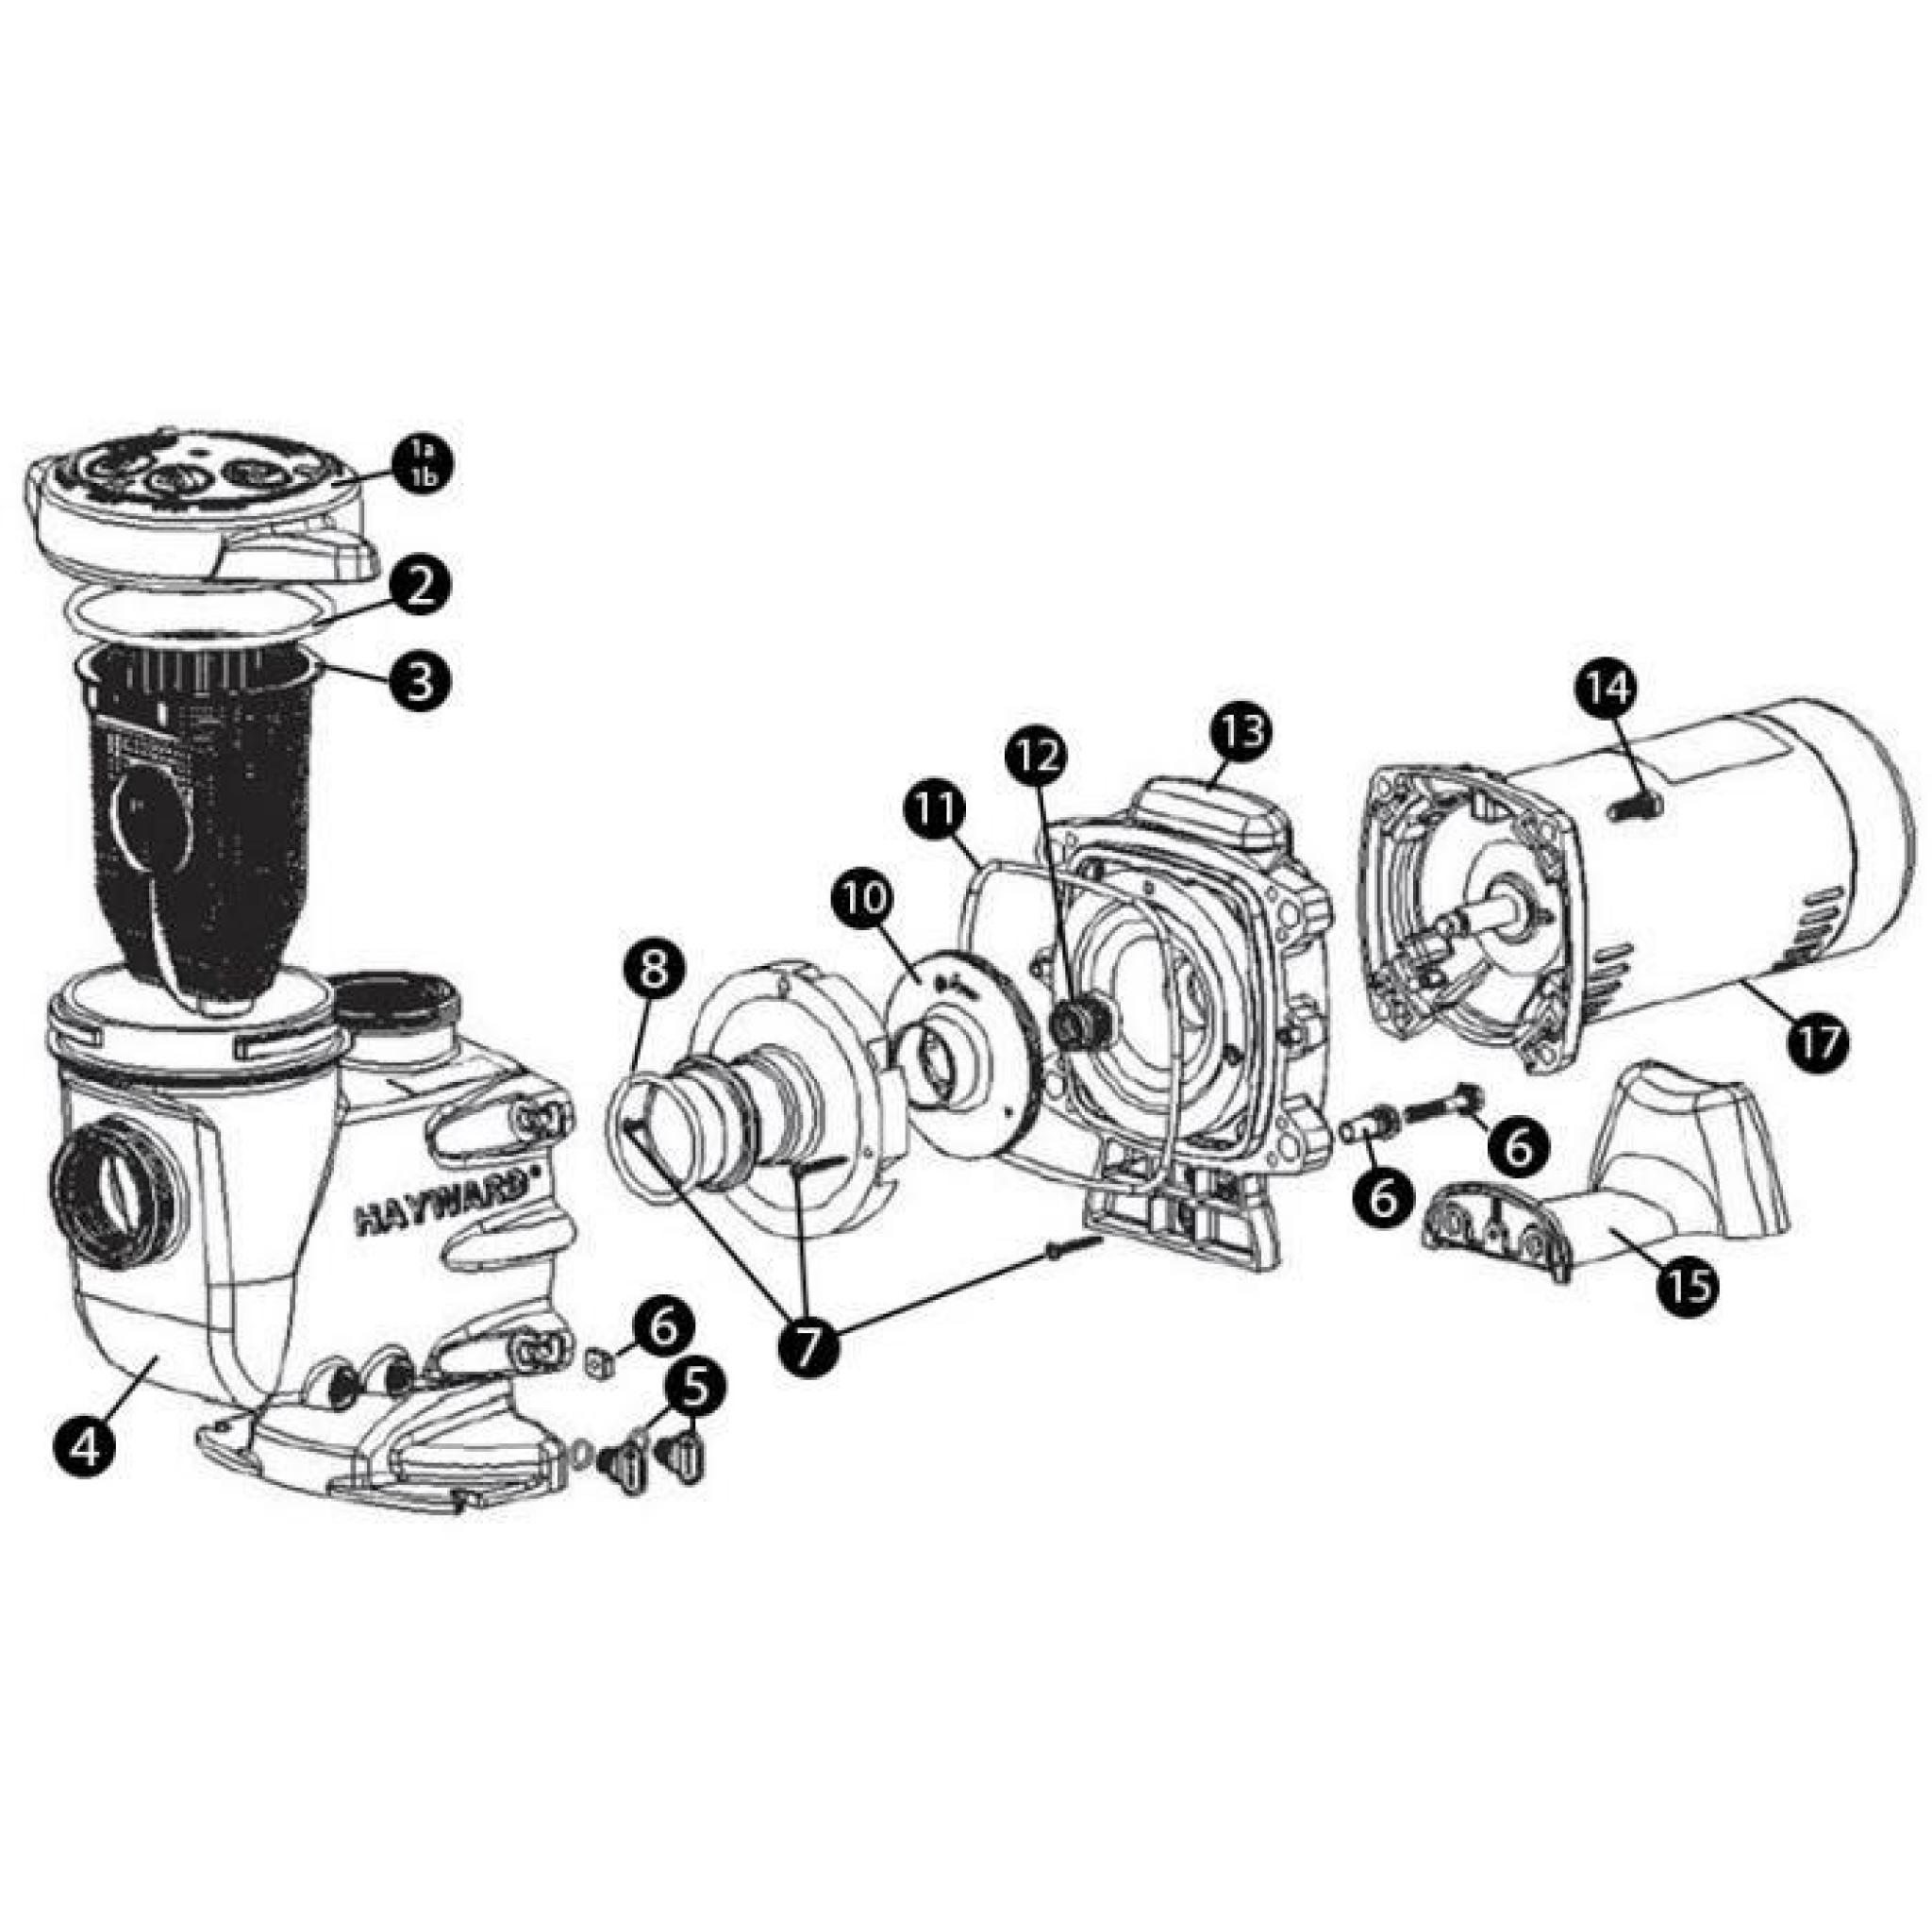 N°6 - Vis corps de pompe et inserts pour pompe de filtration modèle MAX FLO II